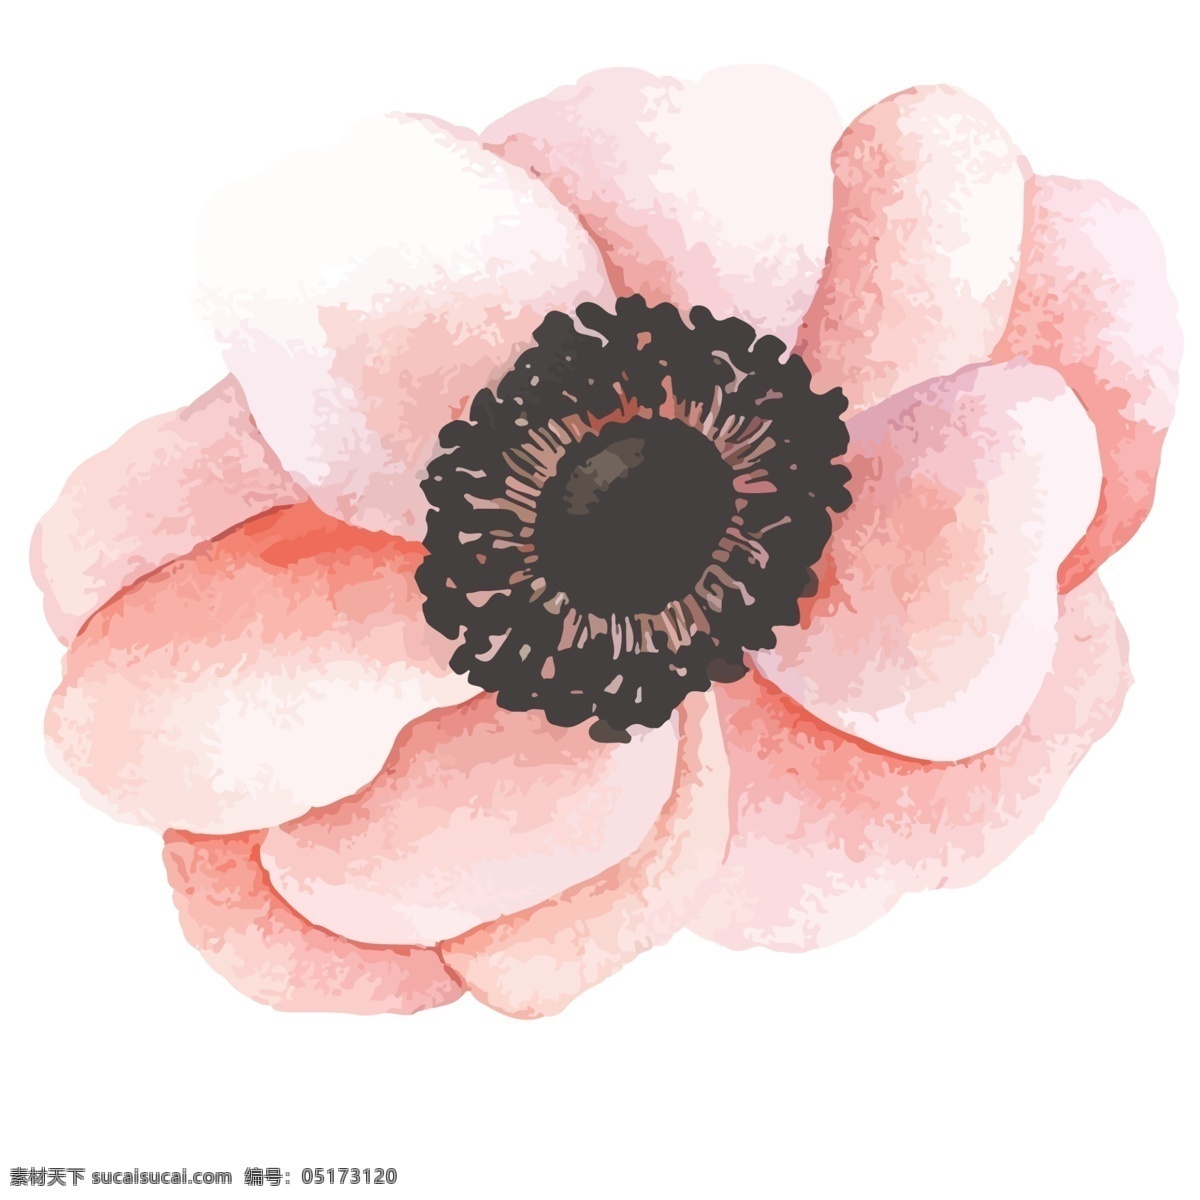 粉红色 花朵 免 抠 图 粉粉花朵 盛世花朵 绿色生态 花儿朵朵开 卡通插画 艺术插画 免抠图